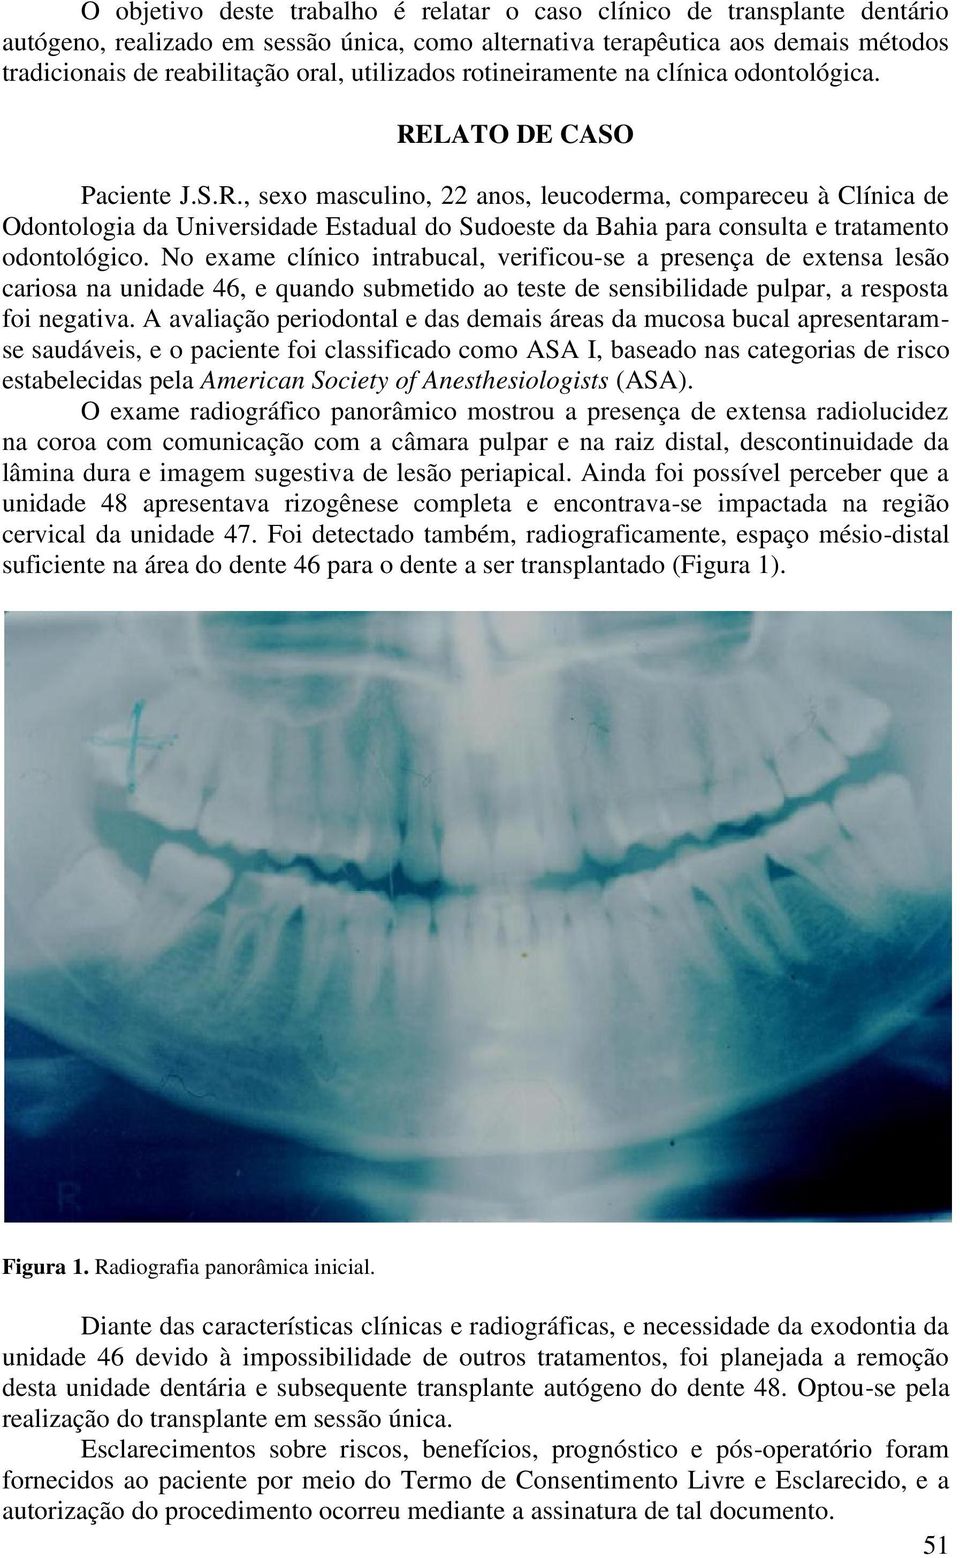 LATO DE CASO Paciente J.S.R., sexo masculino, 22 anos, leucoderma, compareceu à Clínica de Odontologia da Universidade Estadual do Sudoeste da Bahia para consulta e tratamento odontológico.